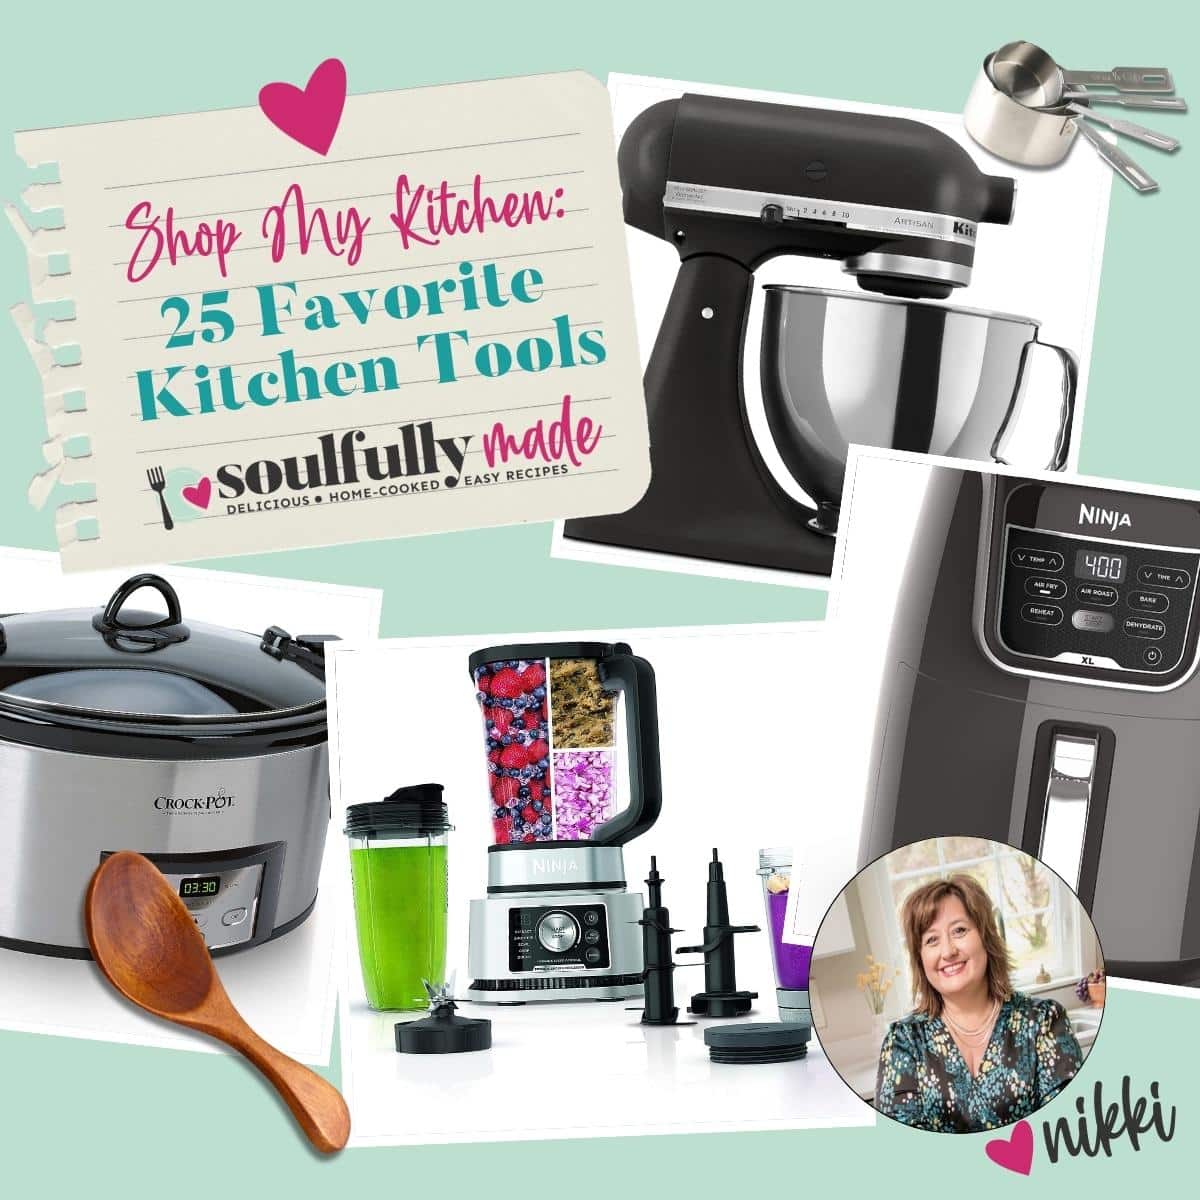 Shop My Kitchen: 25 Favorite Kitchen Tools